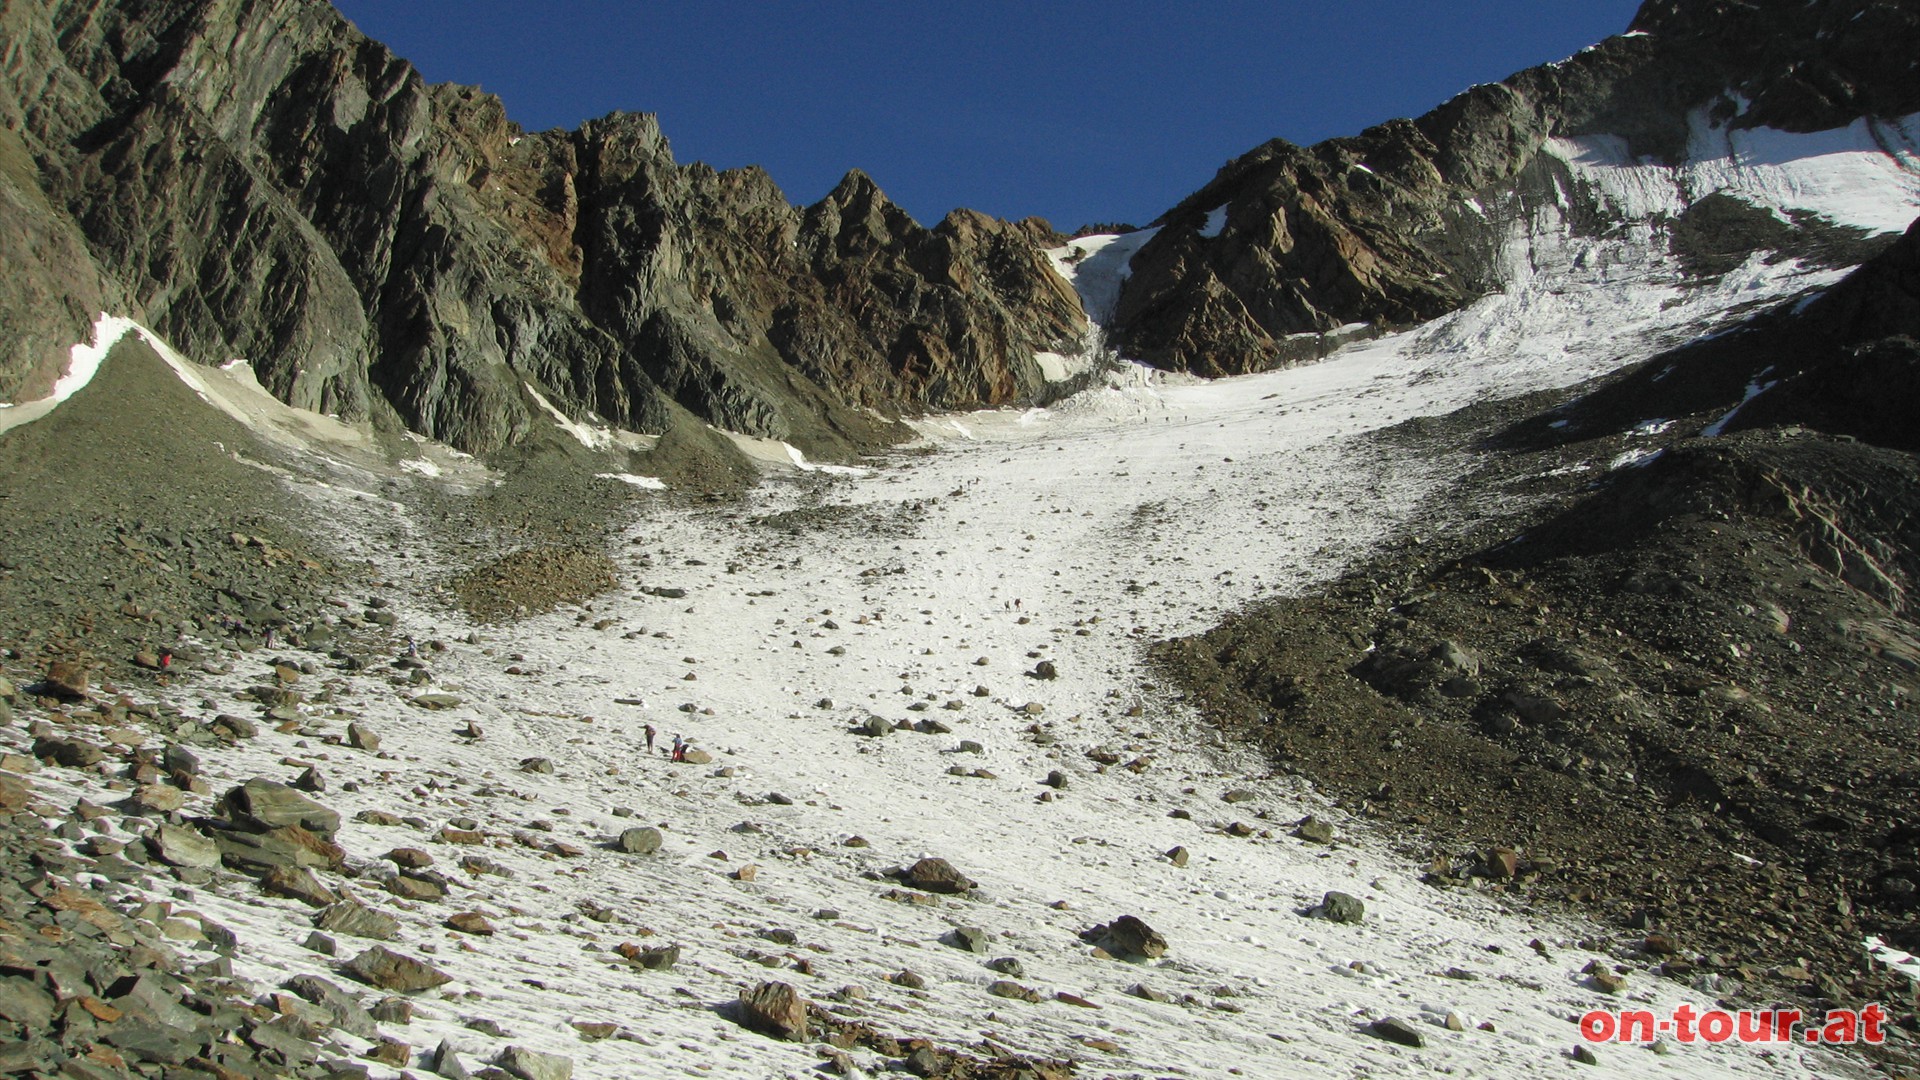 Im oberen Bereich des Mitterkarferners windet sich der Gletscher nach rechts hinauf Richtung Mitterkarjoch, der tiefsten Einsattelung zwischen Wildspitze und Hinterer Brochkogel.